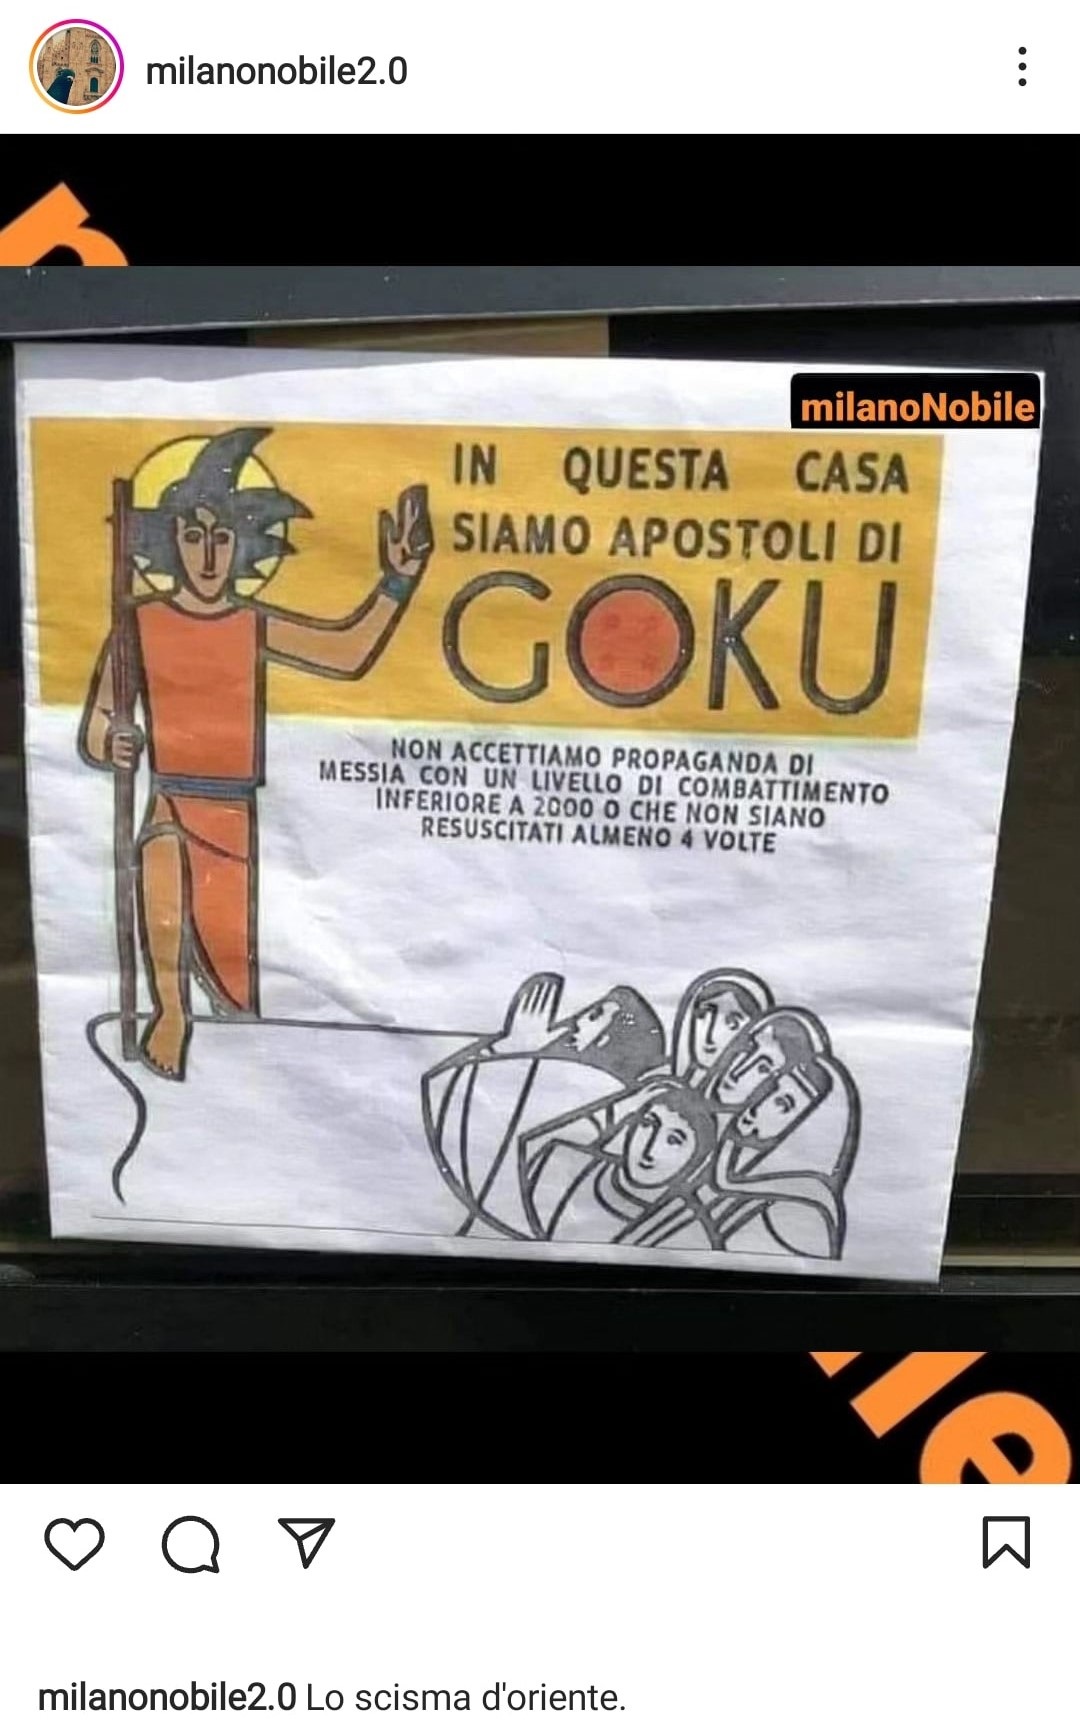 A Milano spunta un cartello contro i Testimoni di Geova, che cita Dragon Ball. Fonte: milanonobile2.0 - Instagram